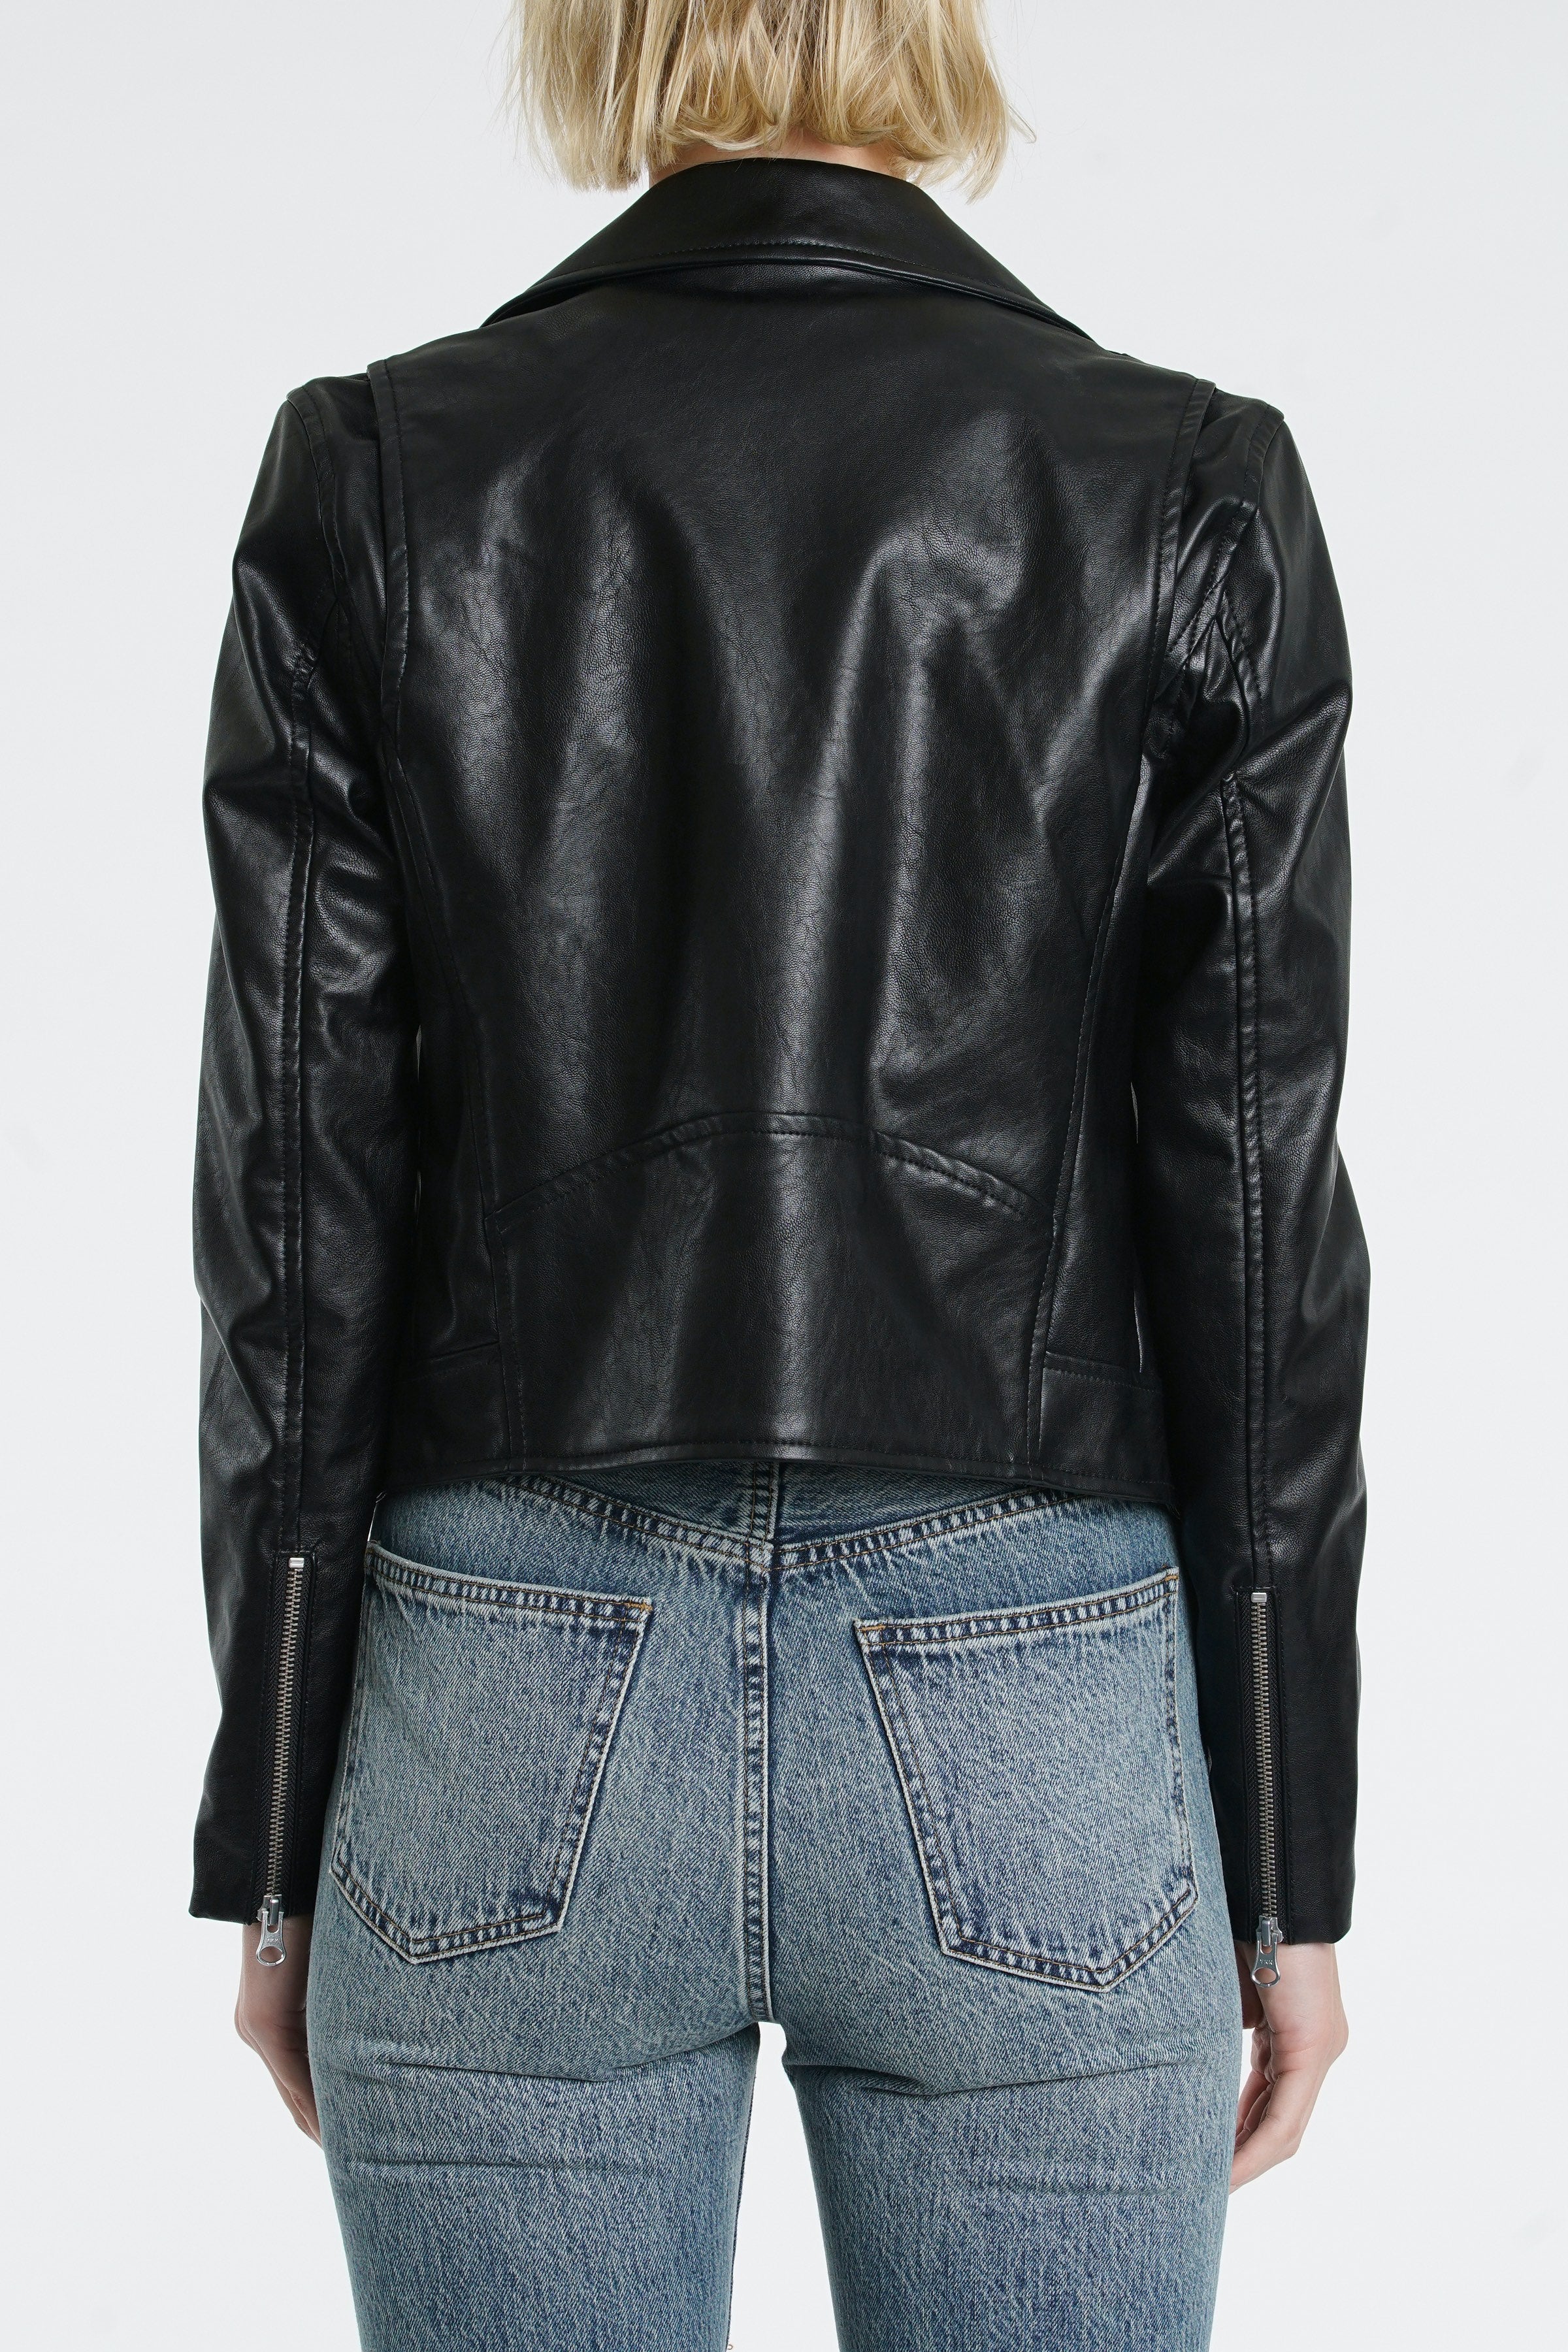 Odette Leather Jacket